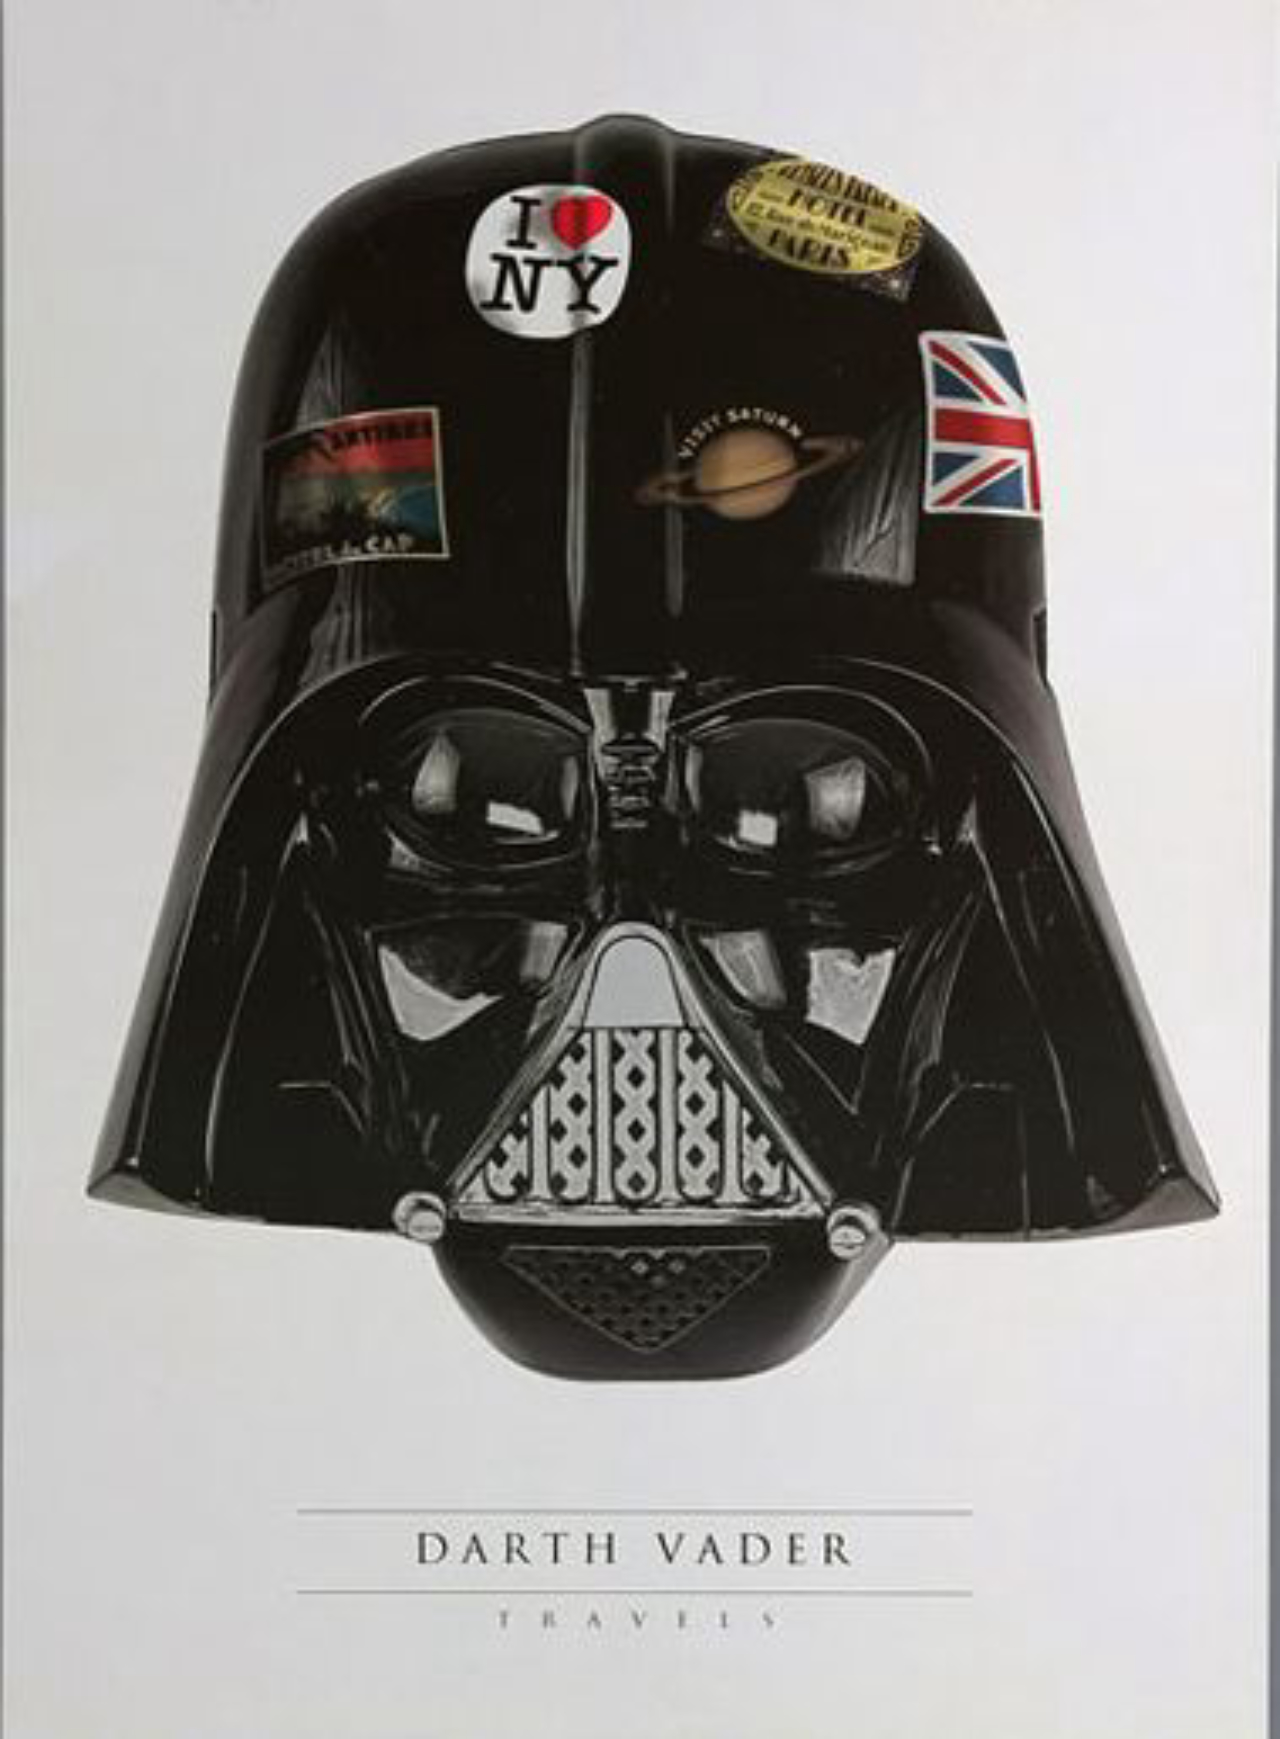 Darth Vader Travels, uma brincadeira com o grande vilão de Star Wars. R$ 19,90 na Chico Rei